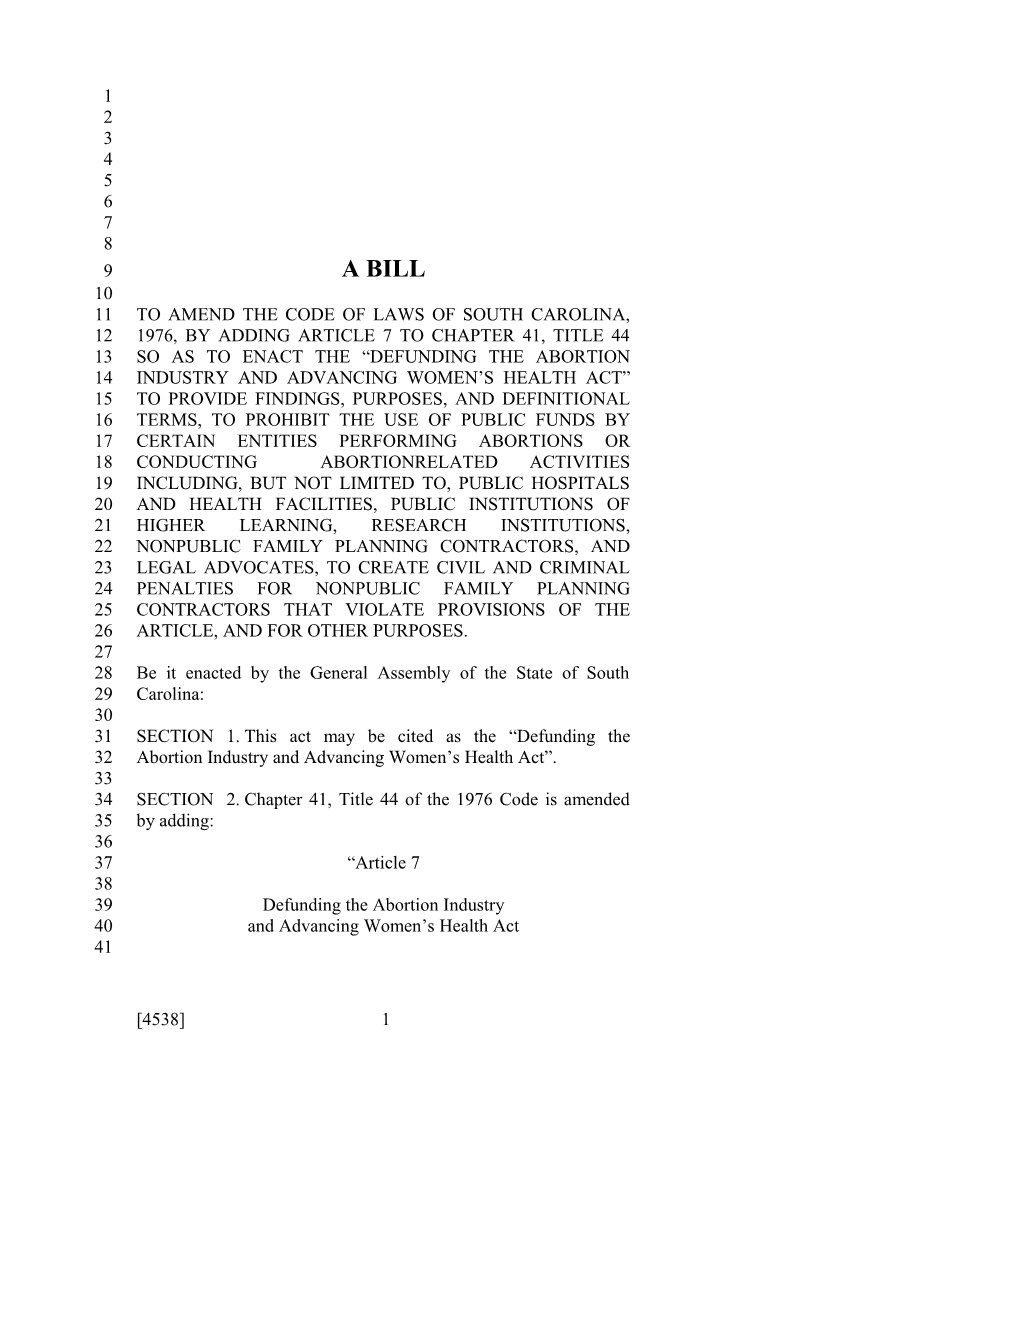 2015-2016 Bill 4538 Text of Previous Version (Dec. 10, 2015) - South Carolina Legislature Online